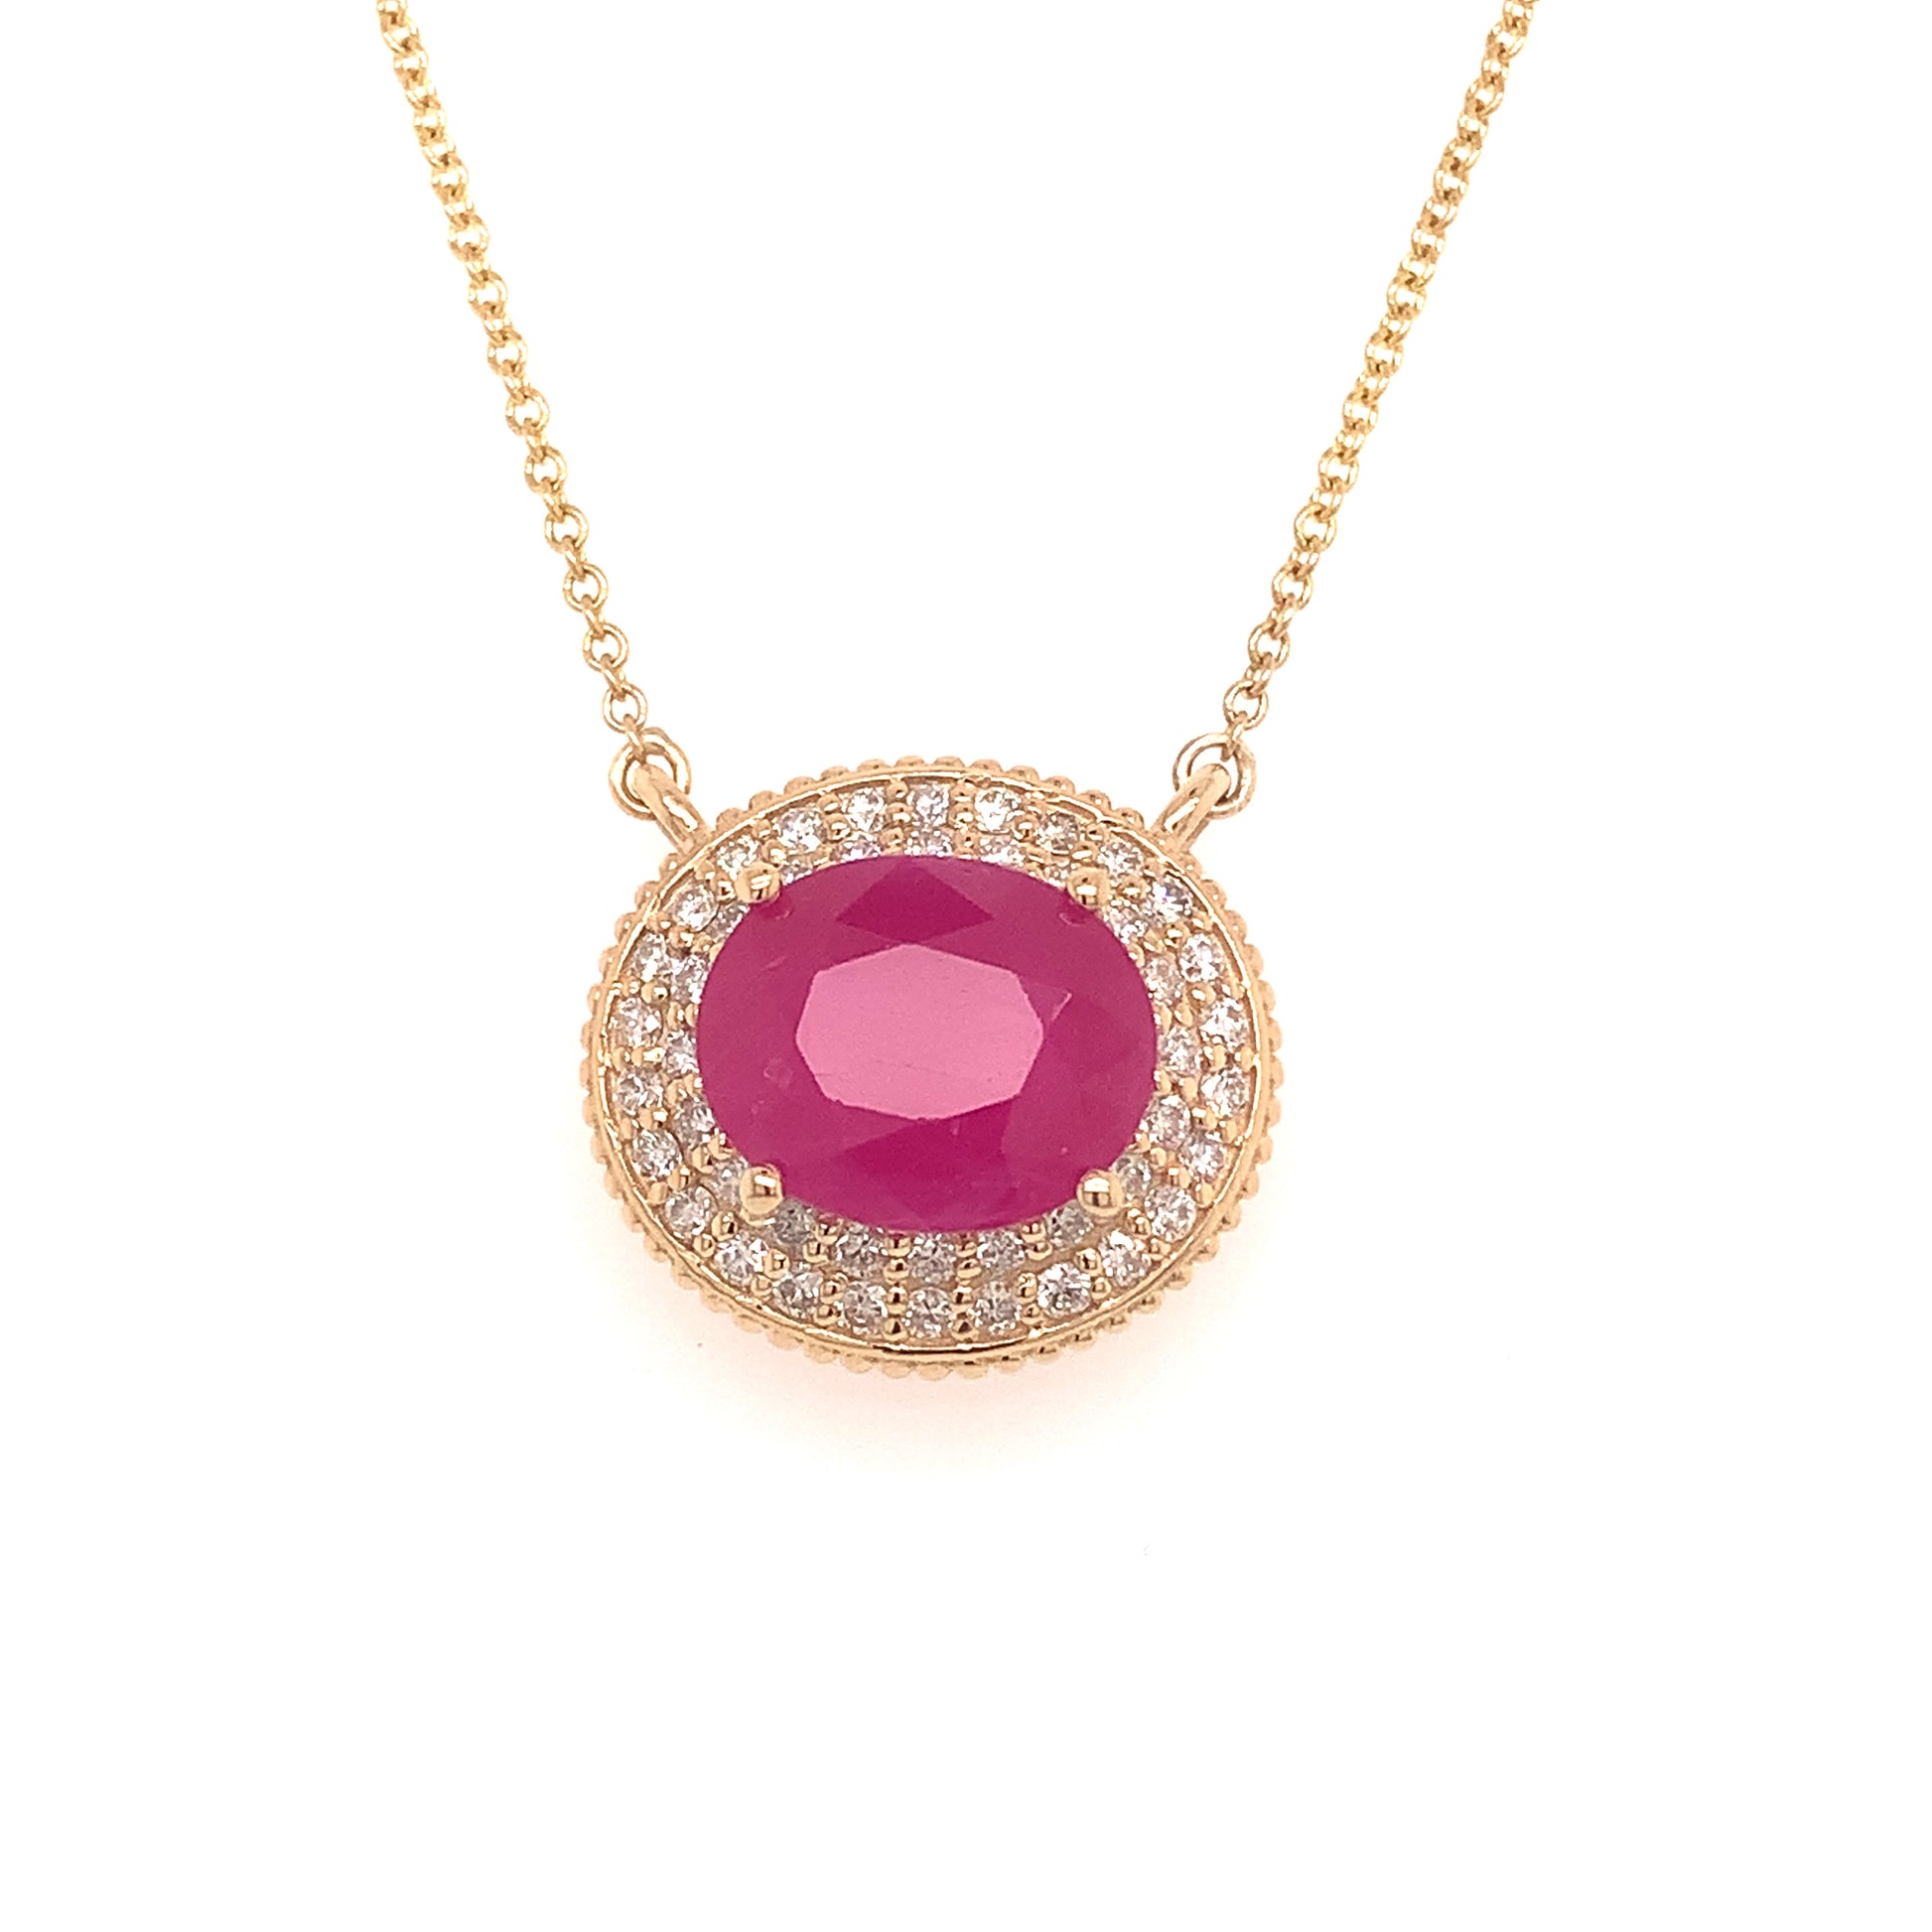 Ruby Diamond Necklace 14k Gold 18" 5.06 TCW Certified $5,975 121097